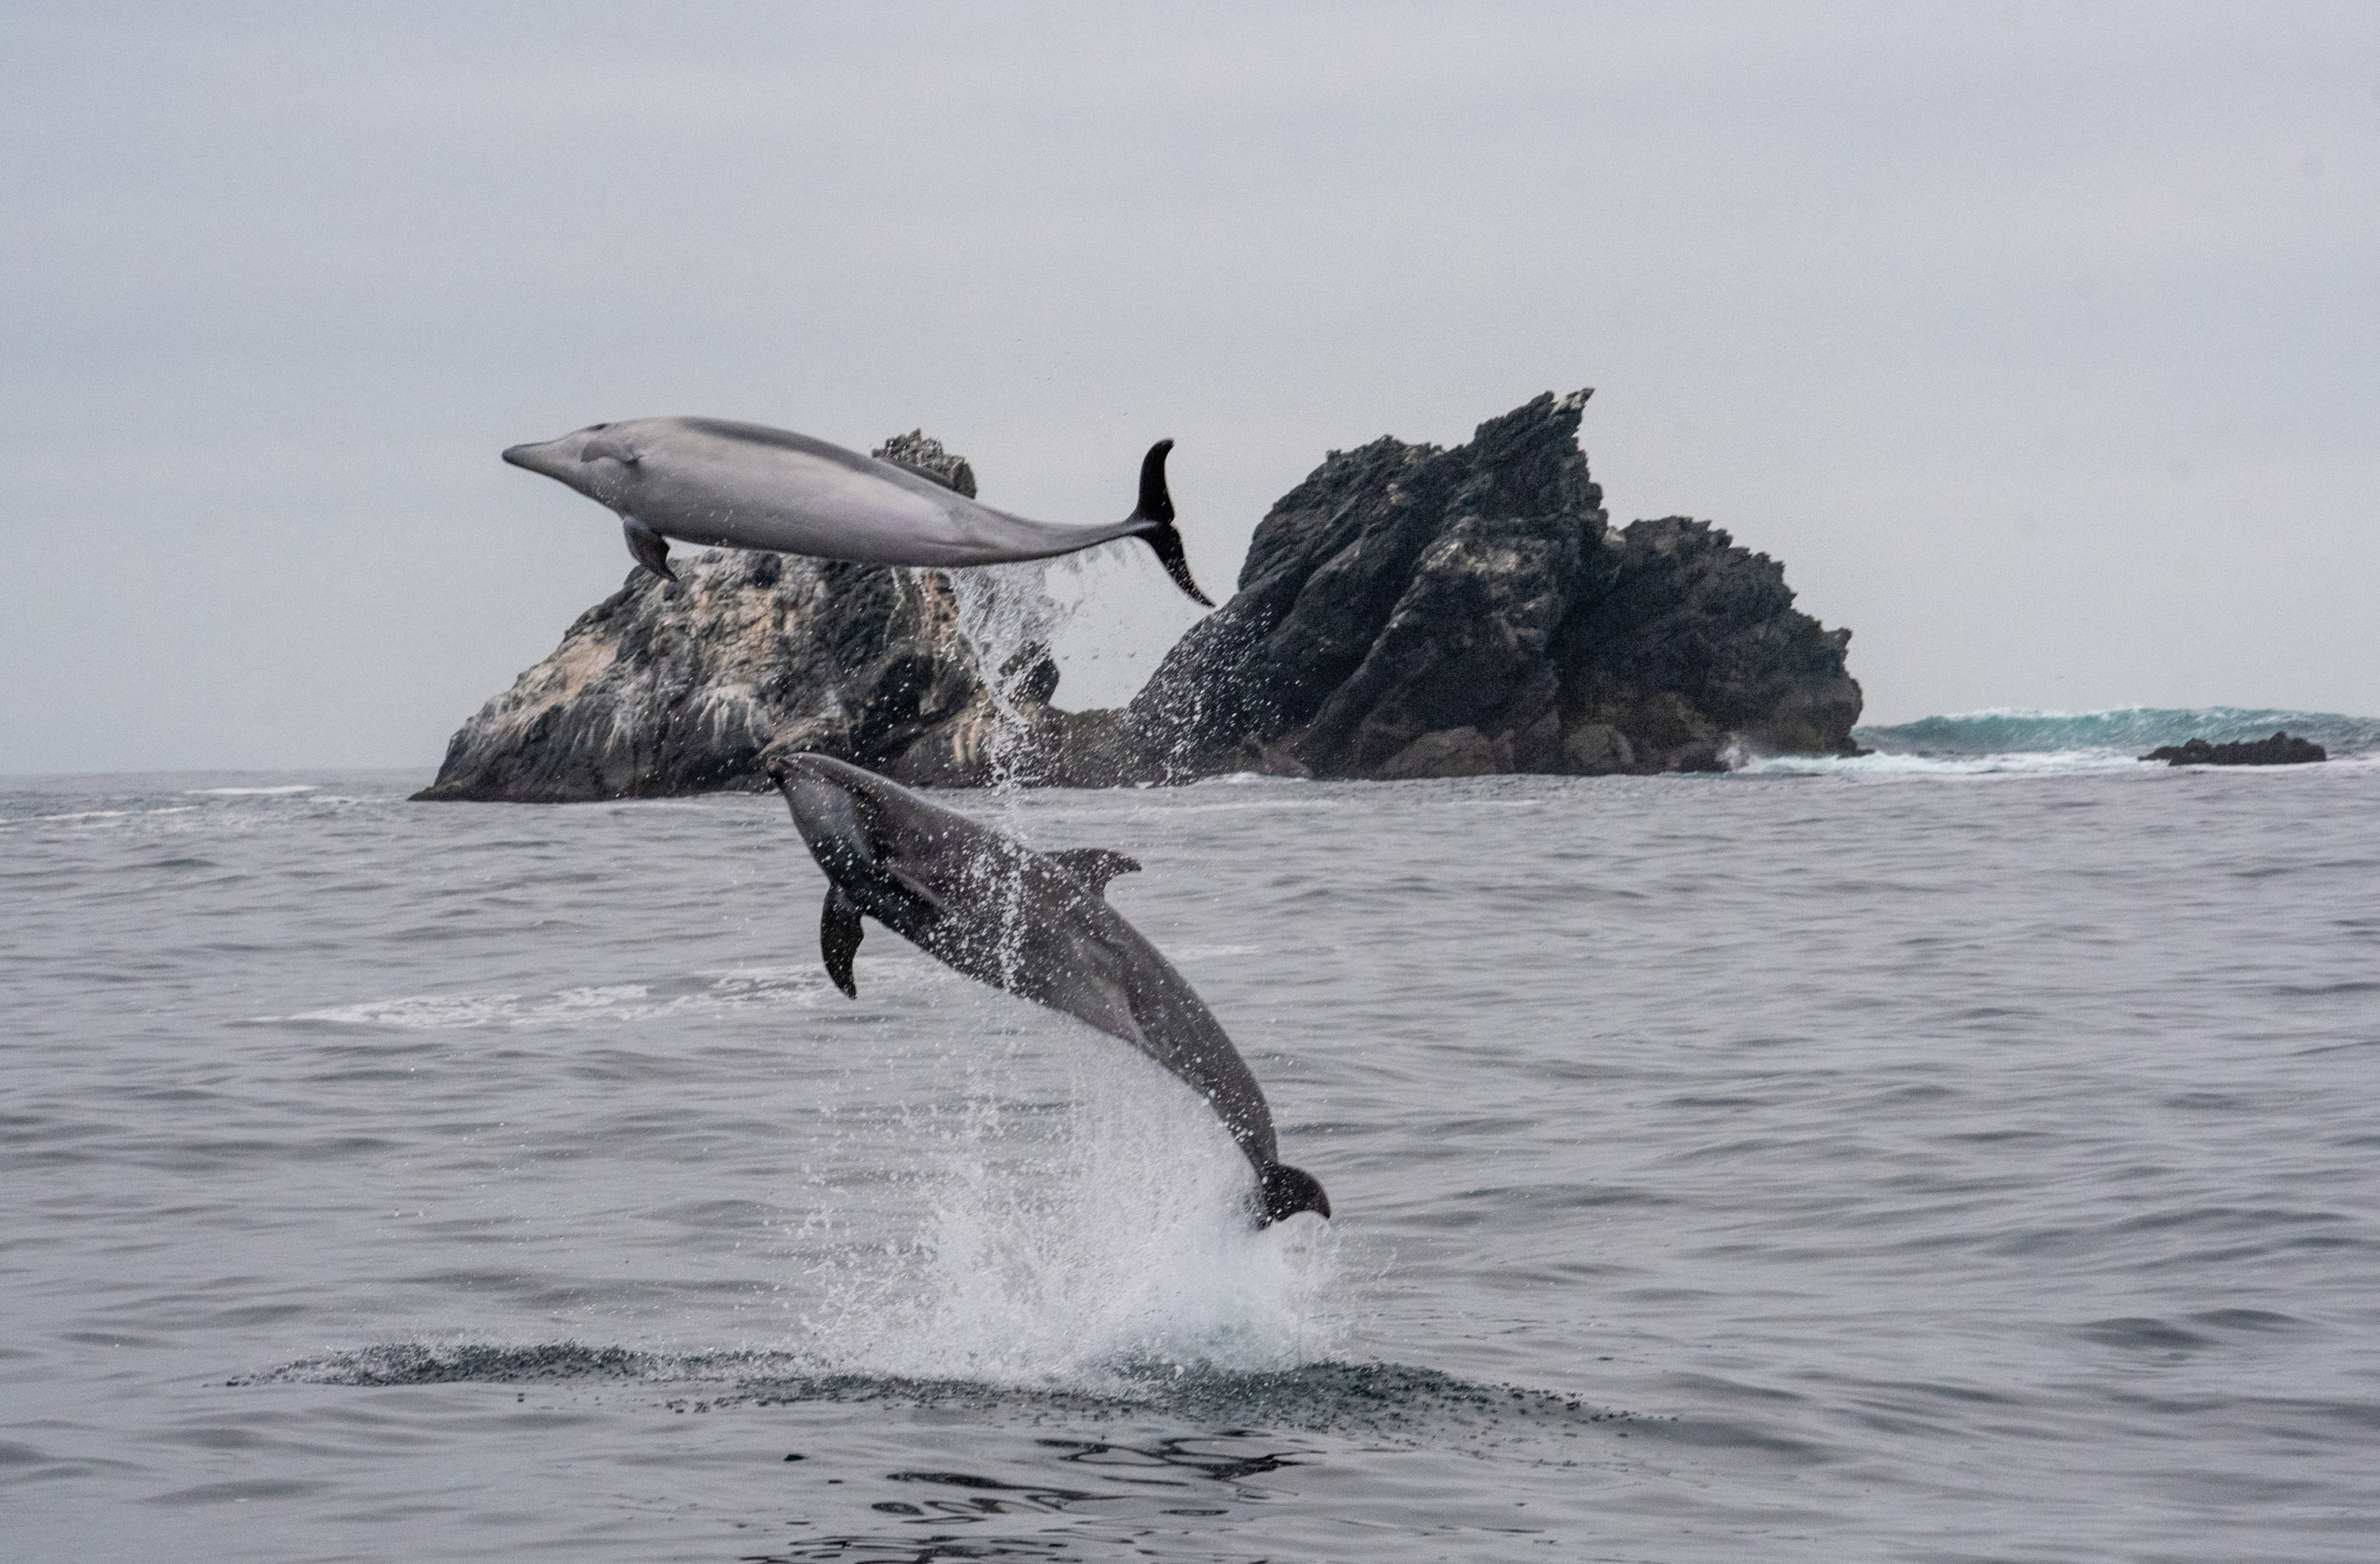 El delfín nariz de botella es una de las especies que habita en la costa de la zona donde Dominga planea operar. Créditos: Oceana.org